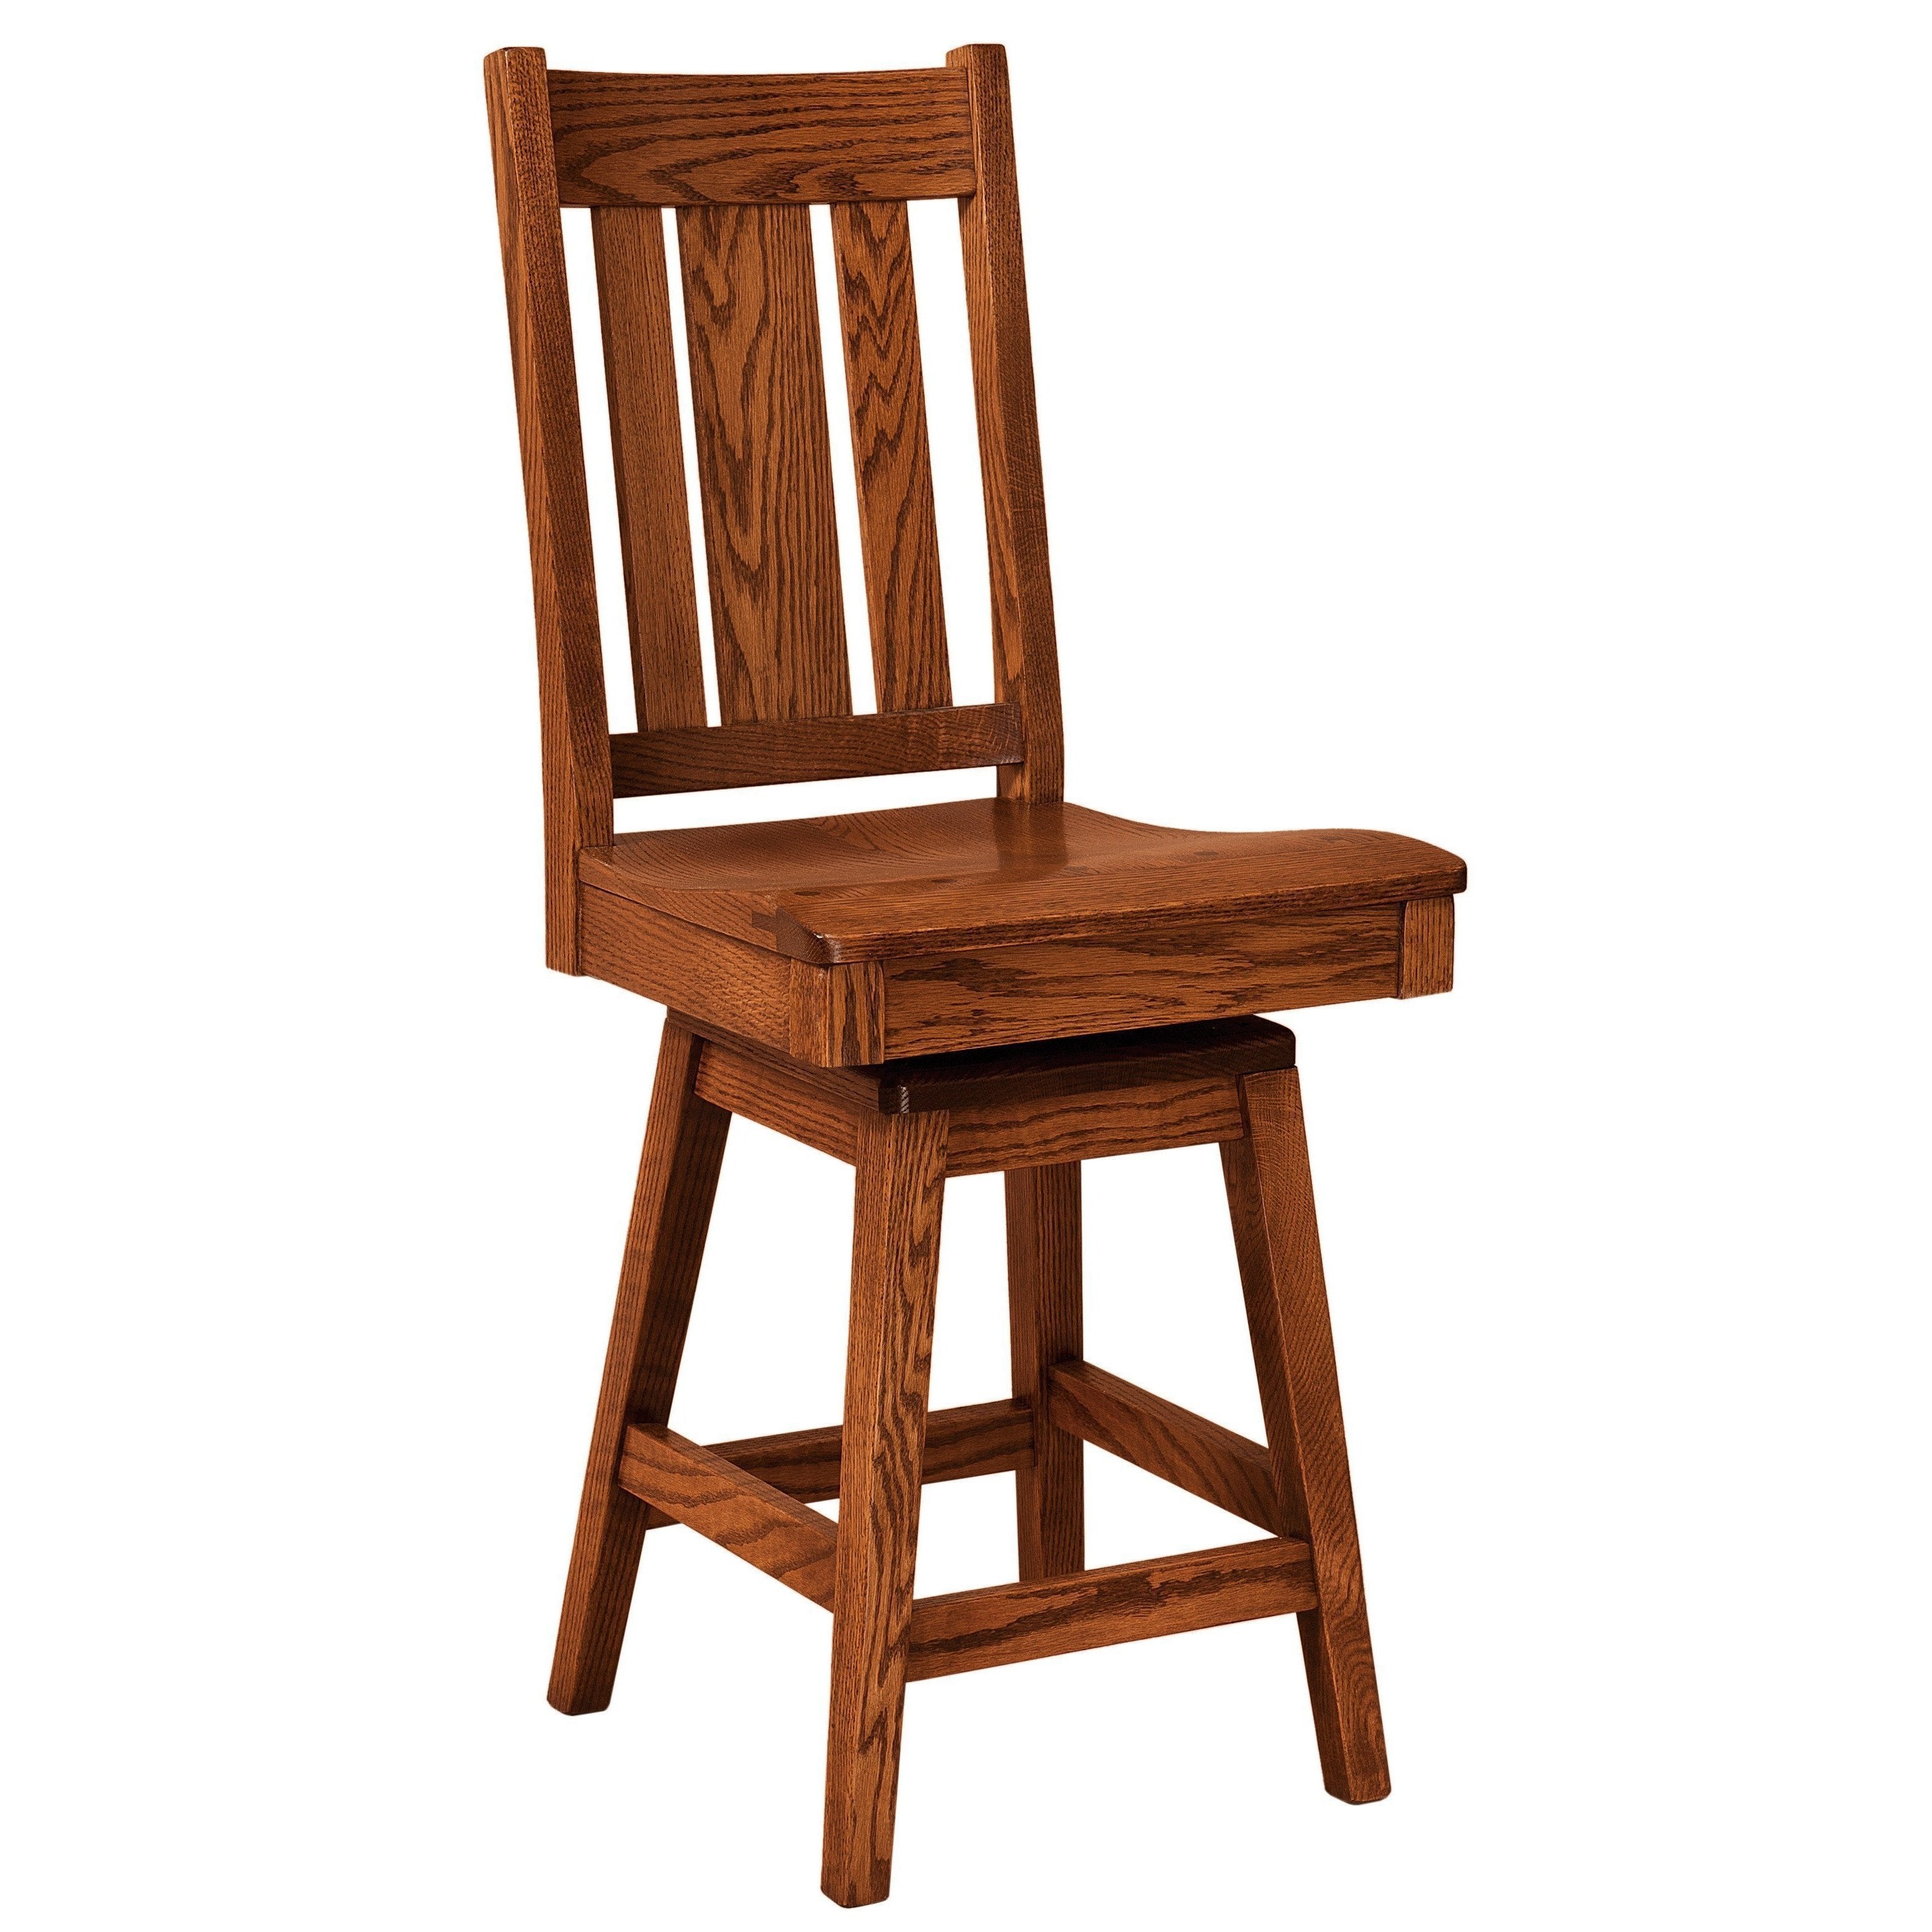 jacoby-swivel-bar-chair-260167.jpg